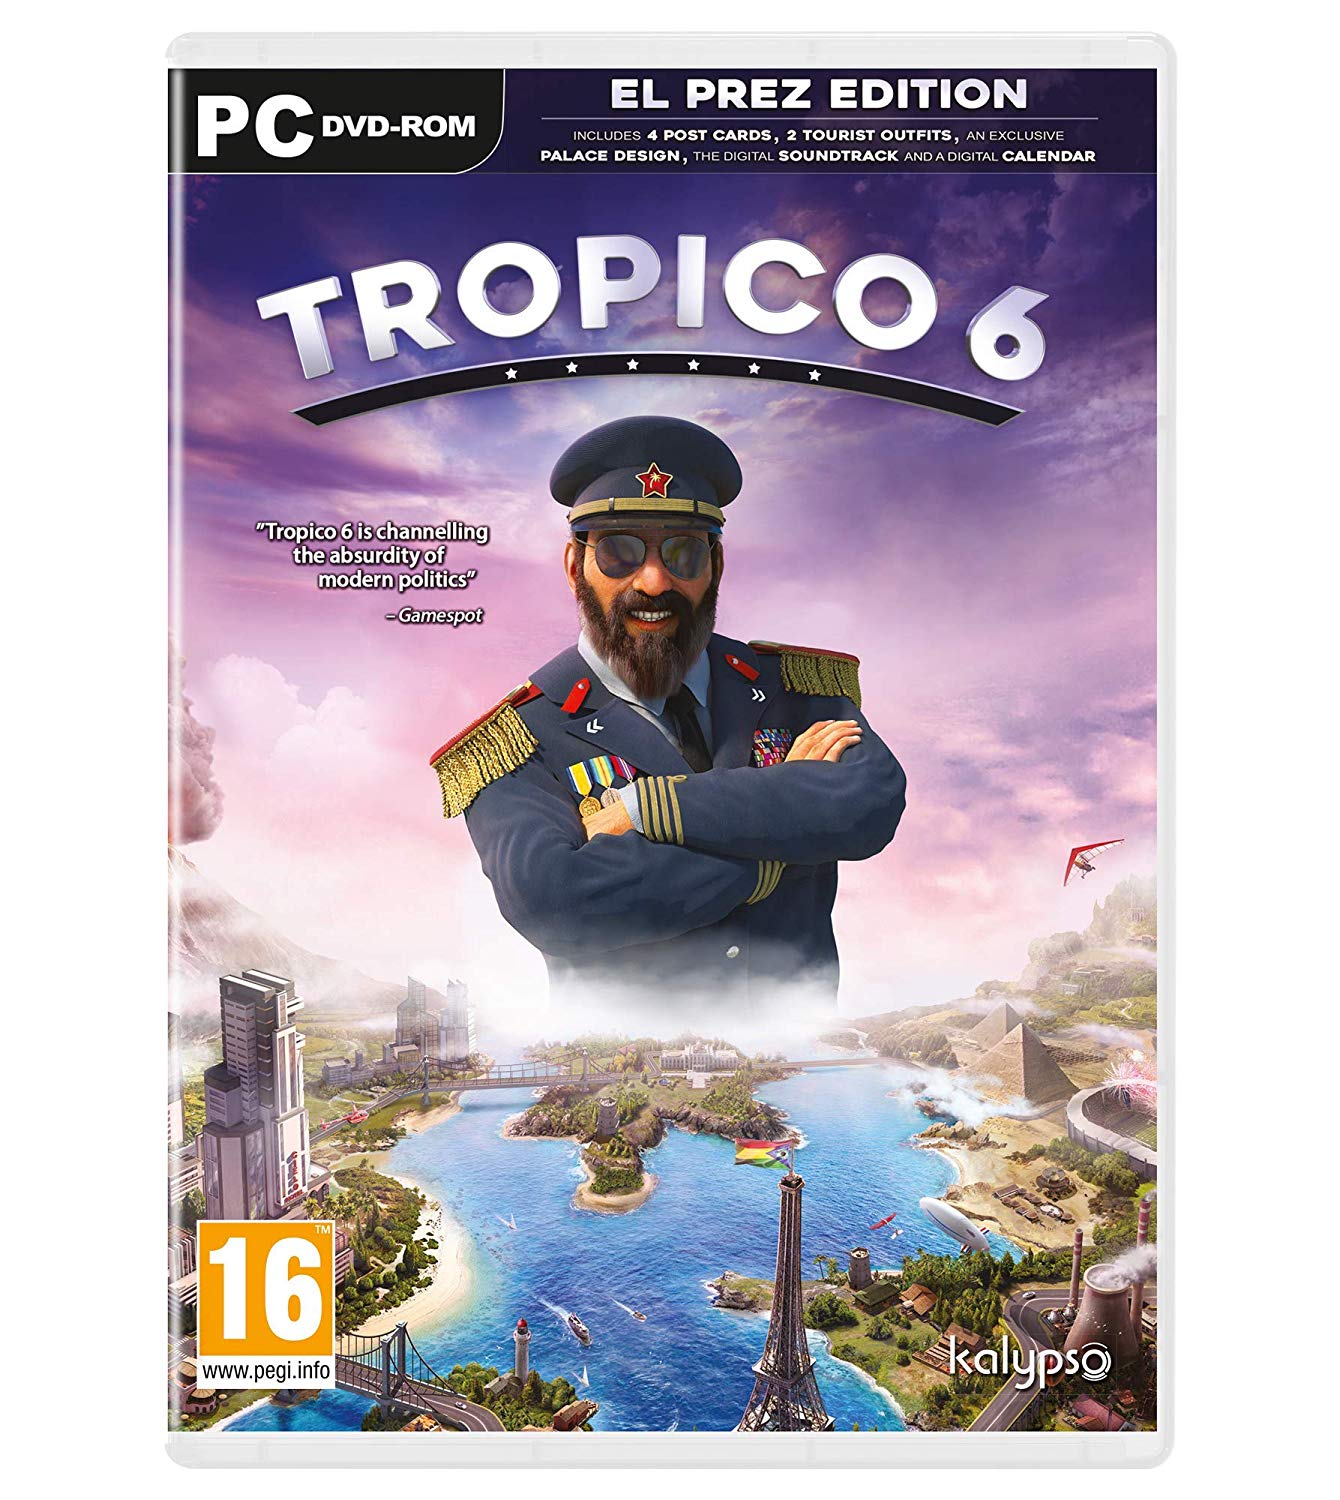 Tropico 6 El Prez Edition CD Key For Steam: USA